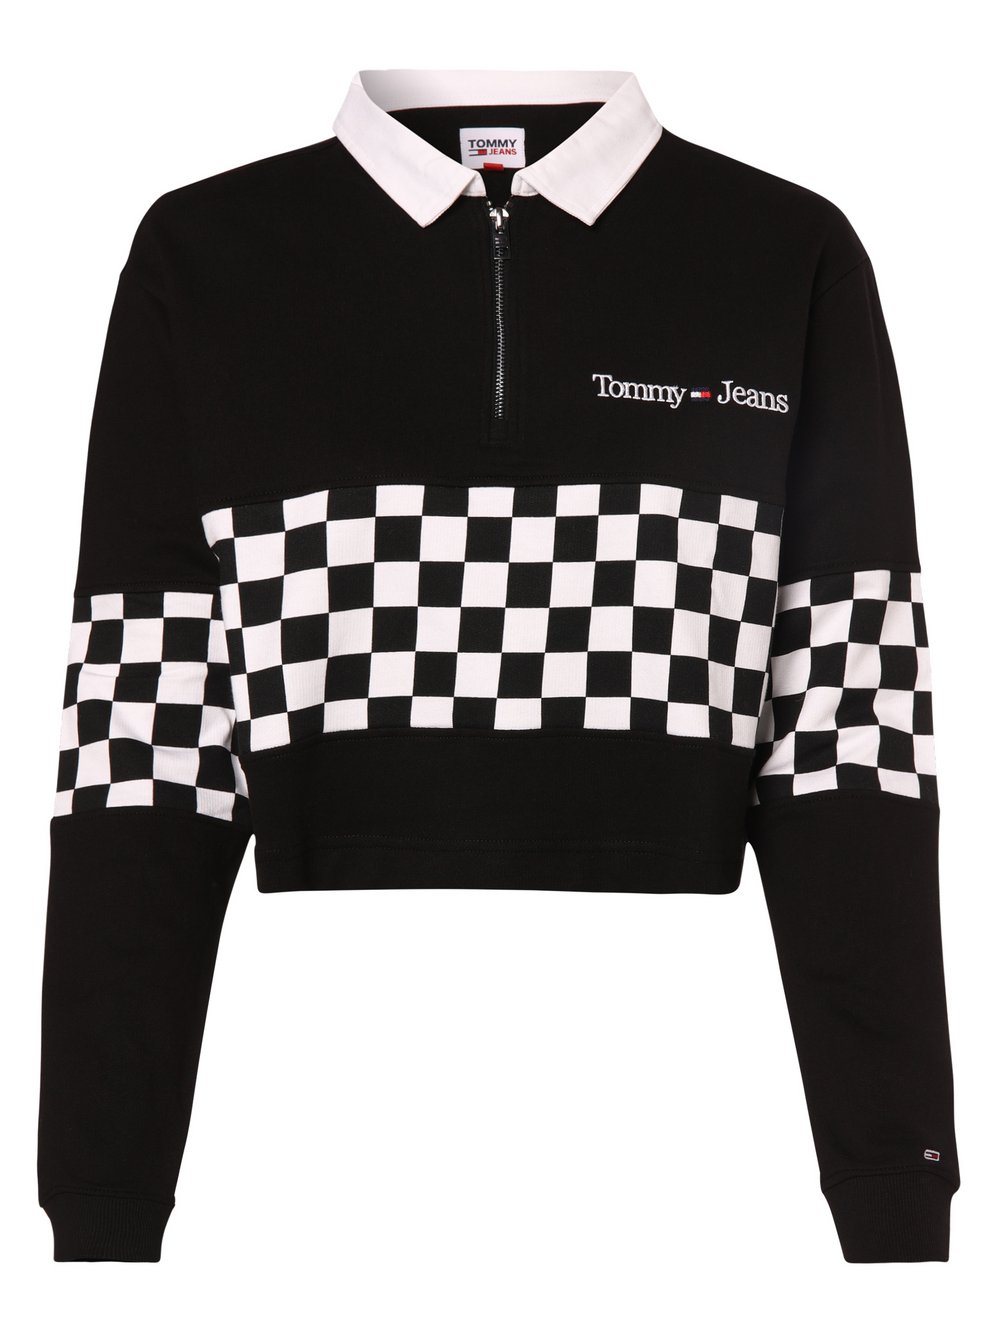 Tommy Jeans - Damska bluza nierozpinana, czarny|biały